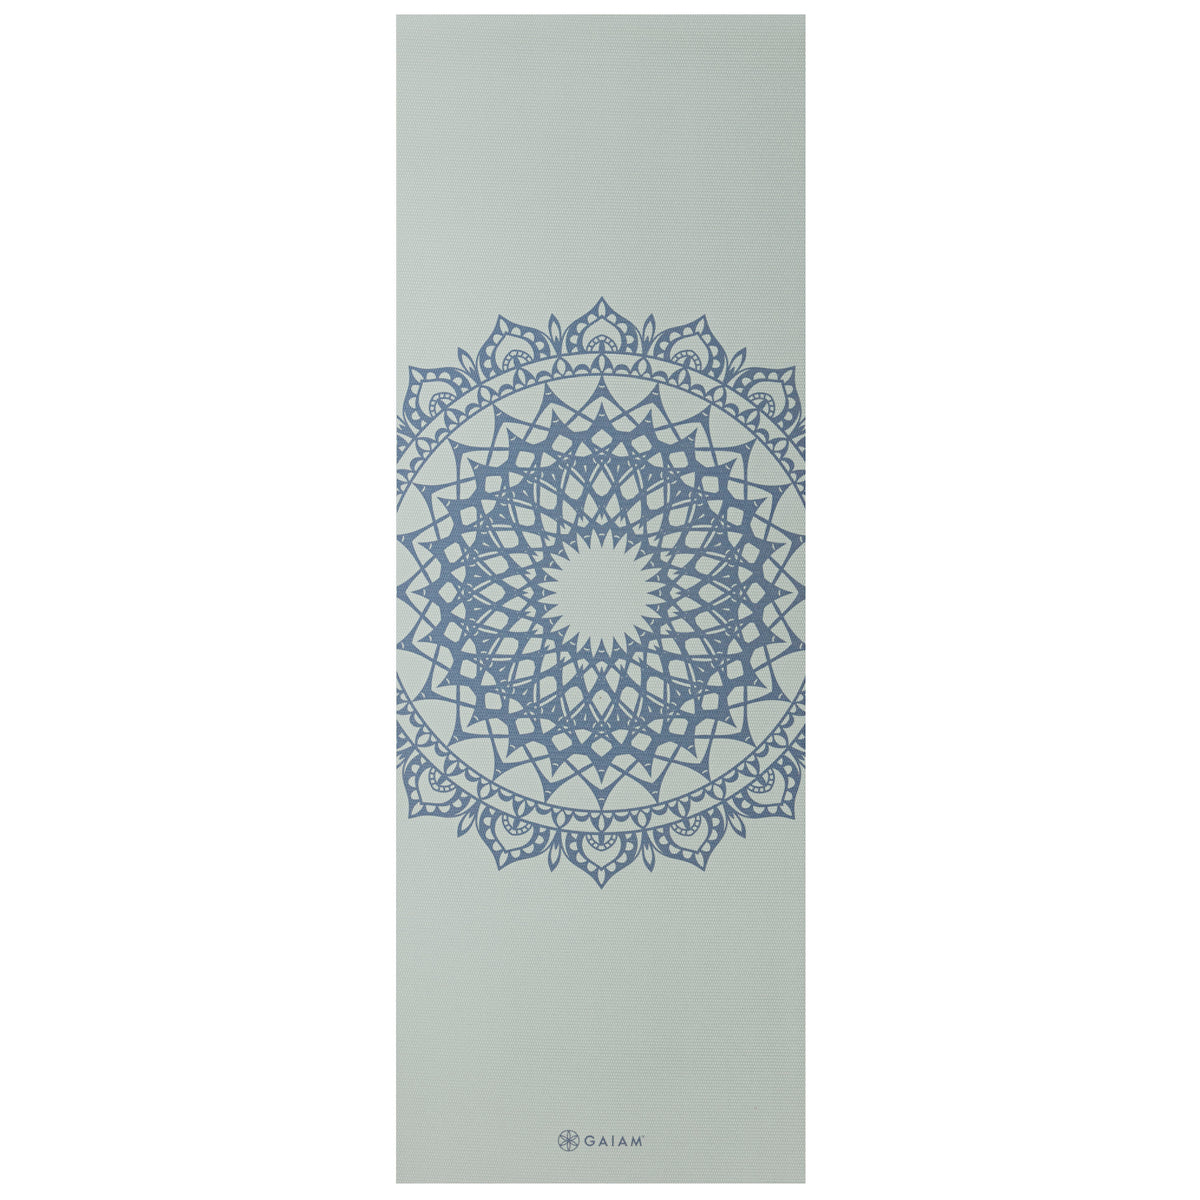 Gaiam Printed Marrakesh Yoga Mat (5mm) Lakeside Marrakesh flat